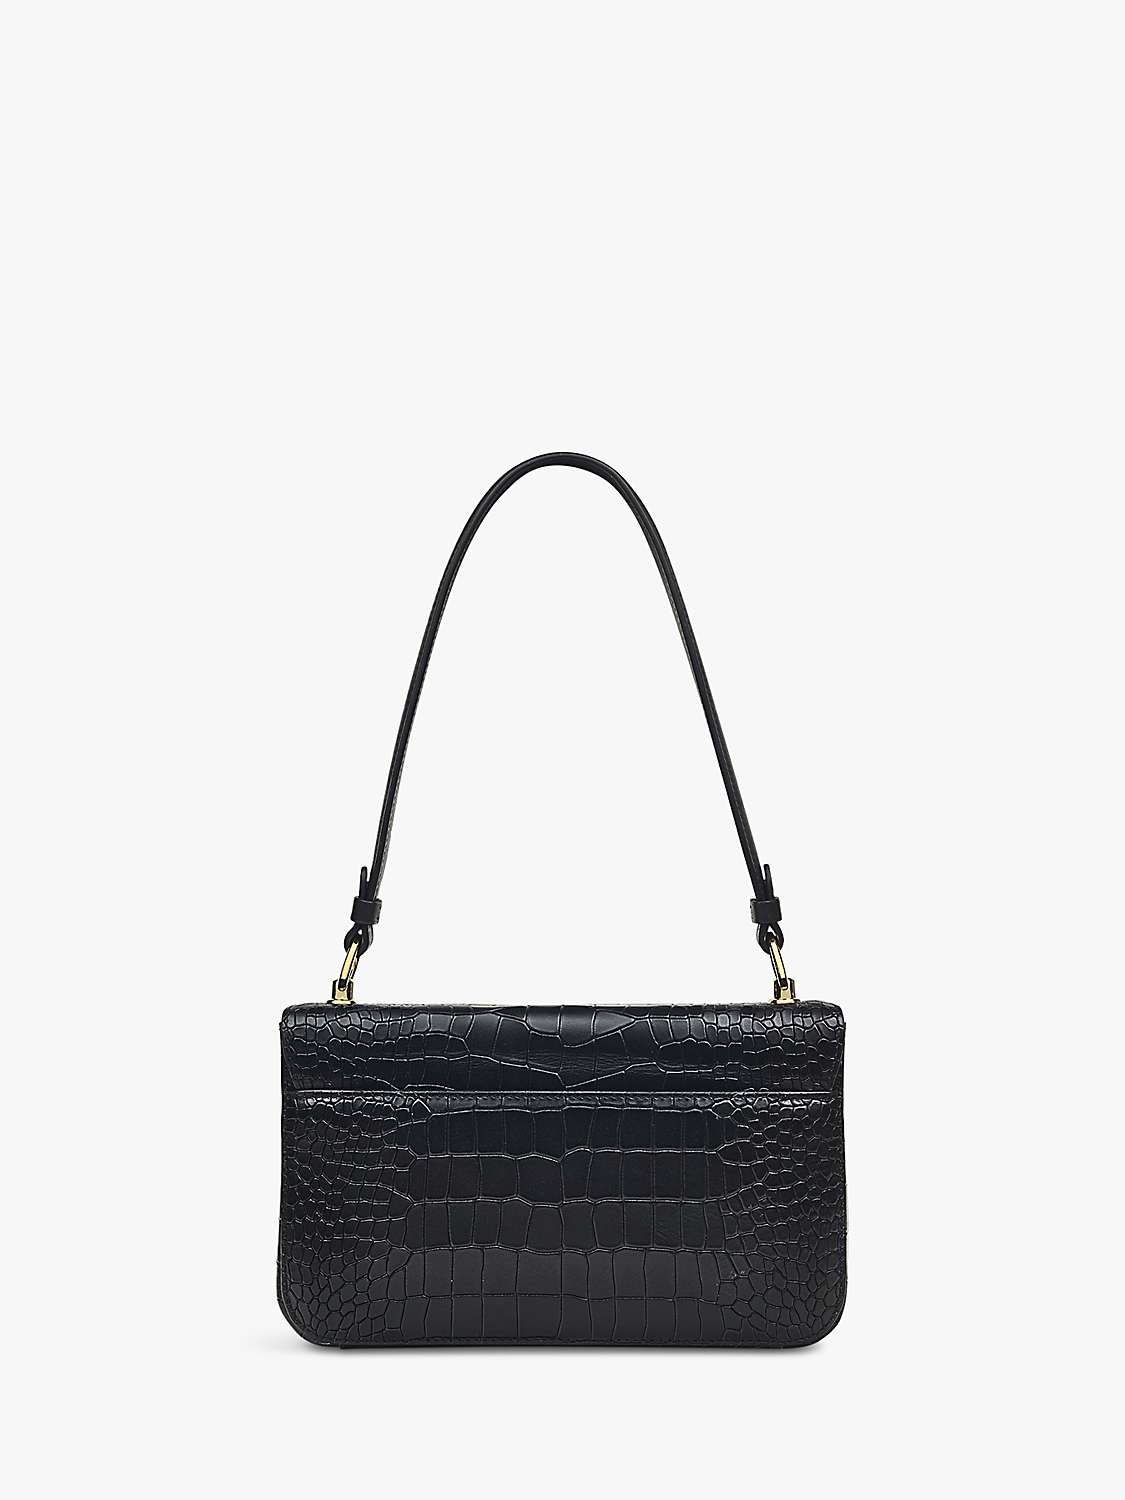 Buy Radley Hanley Close Croc Effect Leather Medium Shoulder Bag Online at johnlewis.com